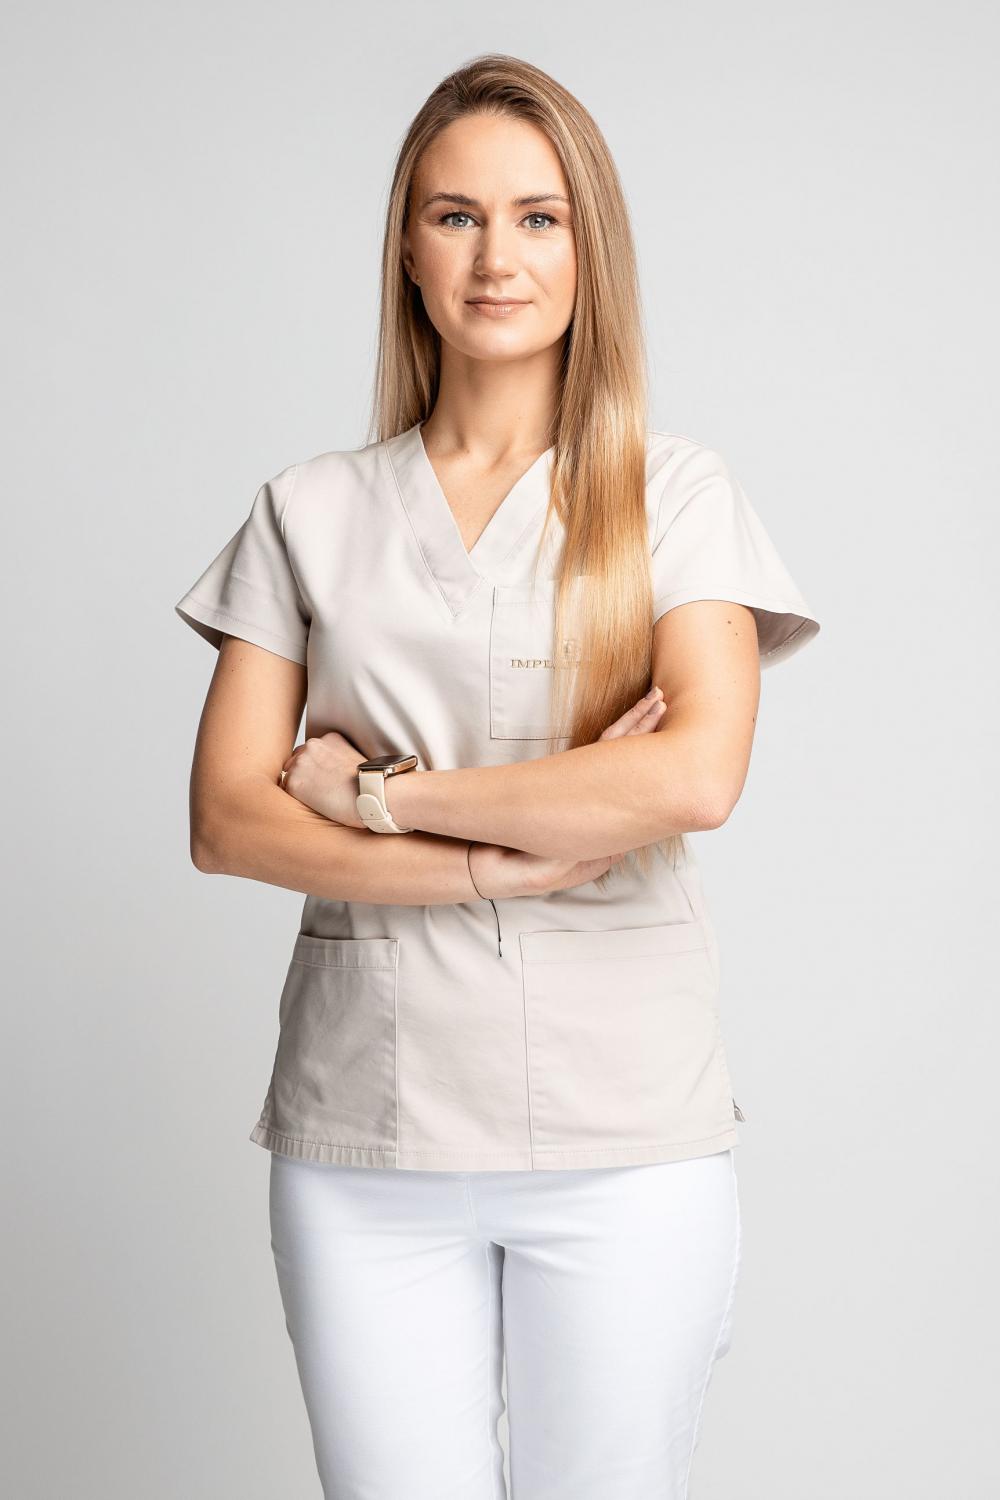 Radvilė Capienė - Gyd. odontologė